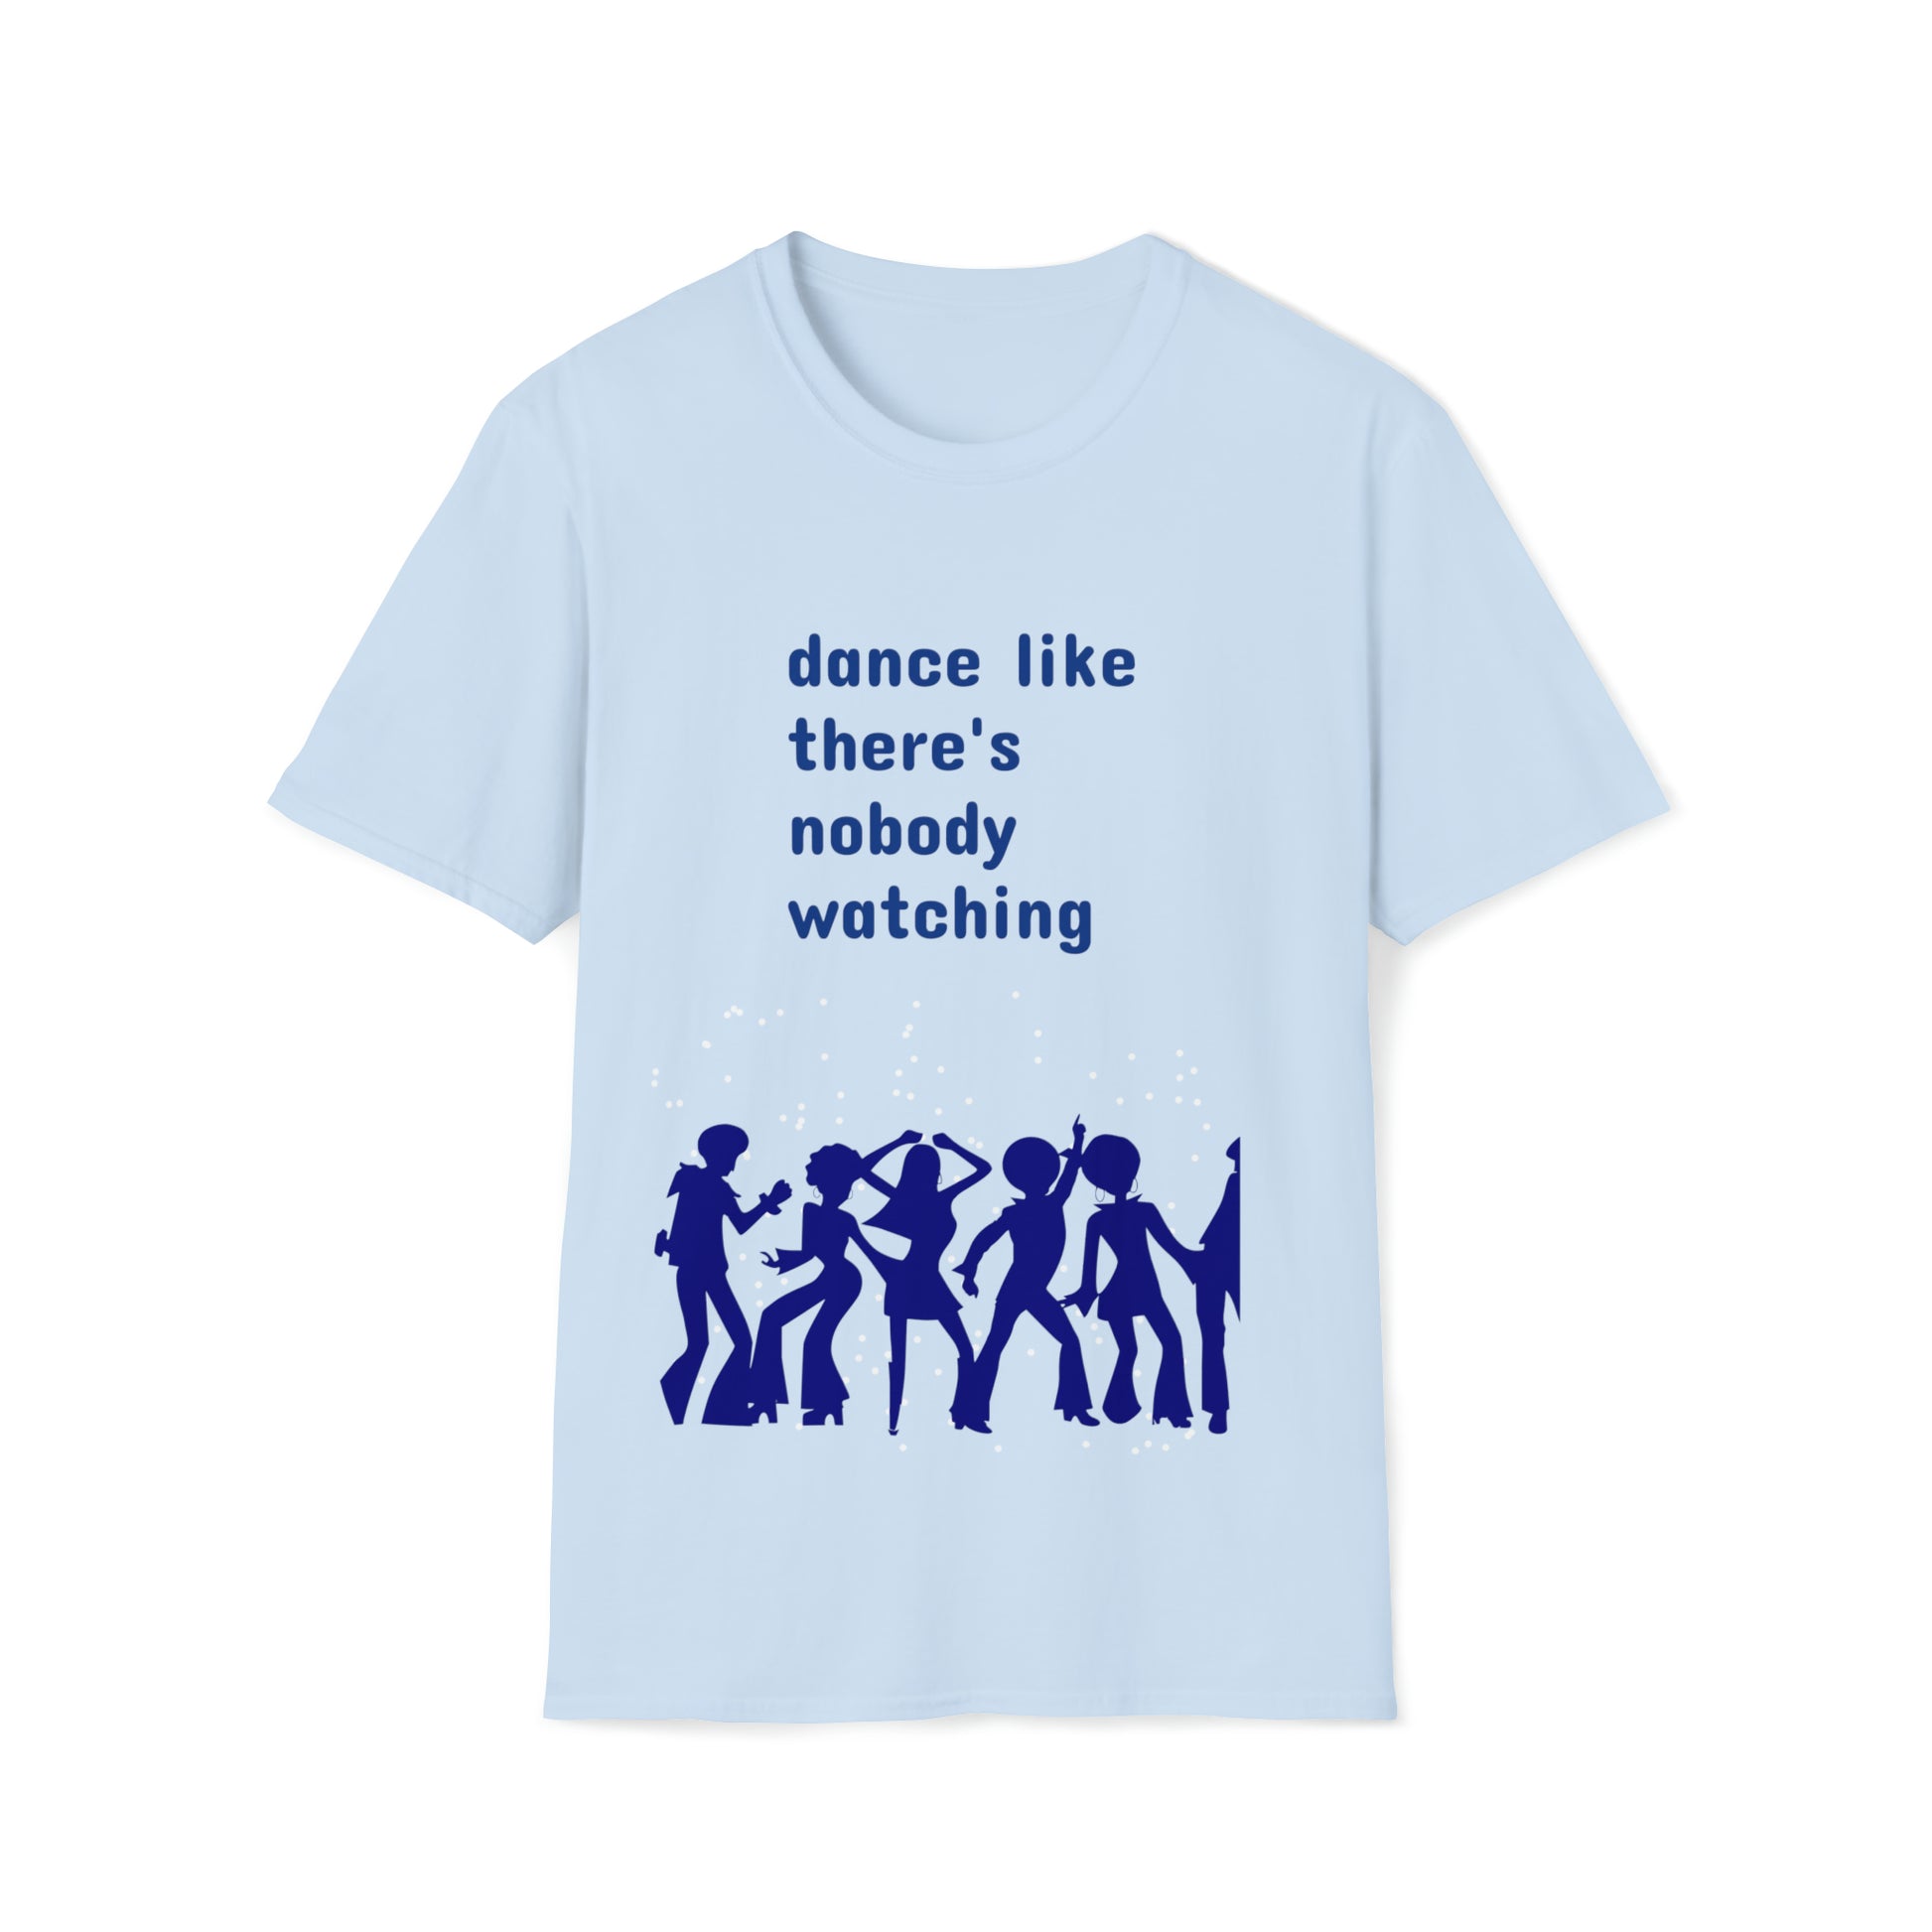 dance like there's nobody watching tshirt